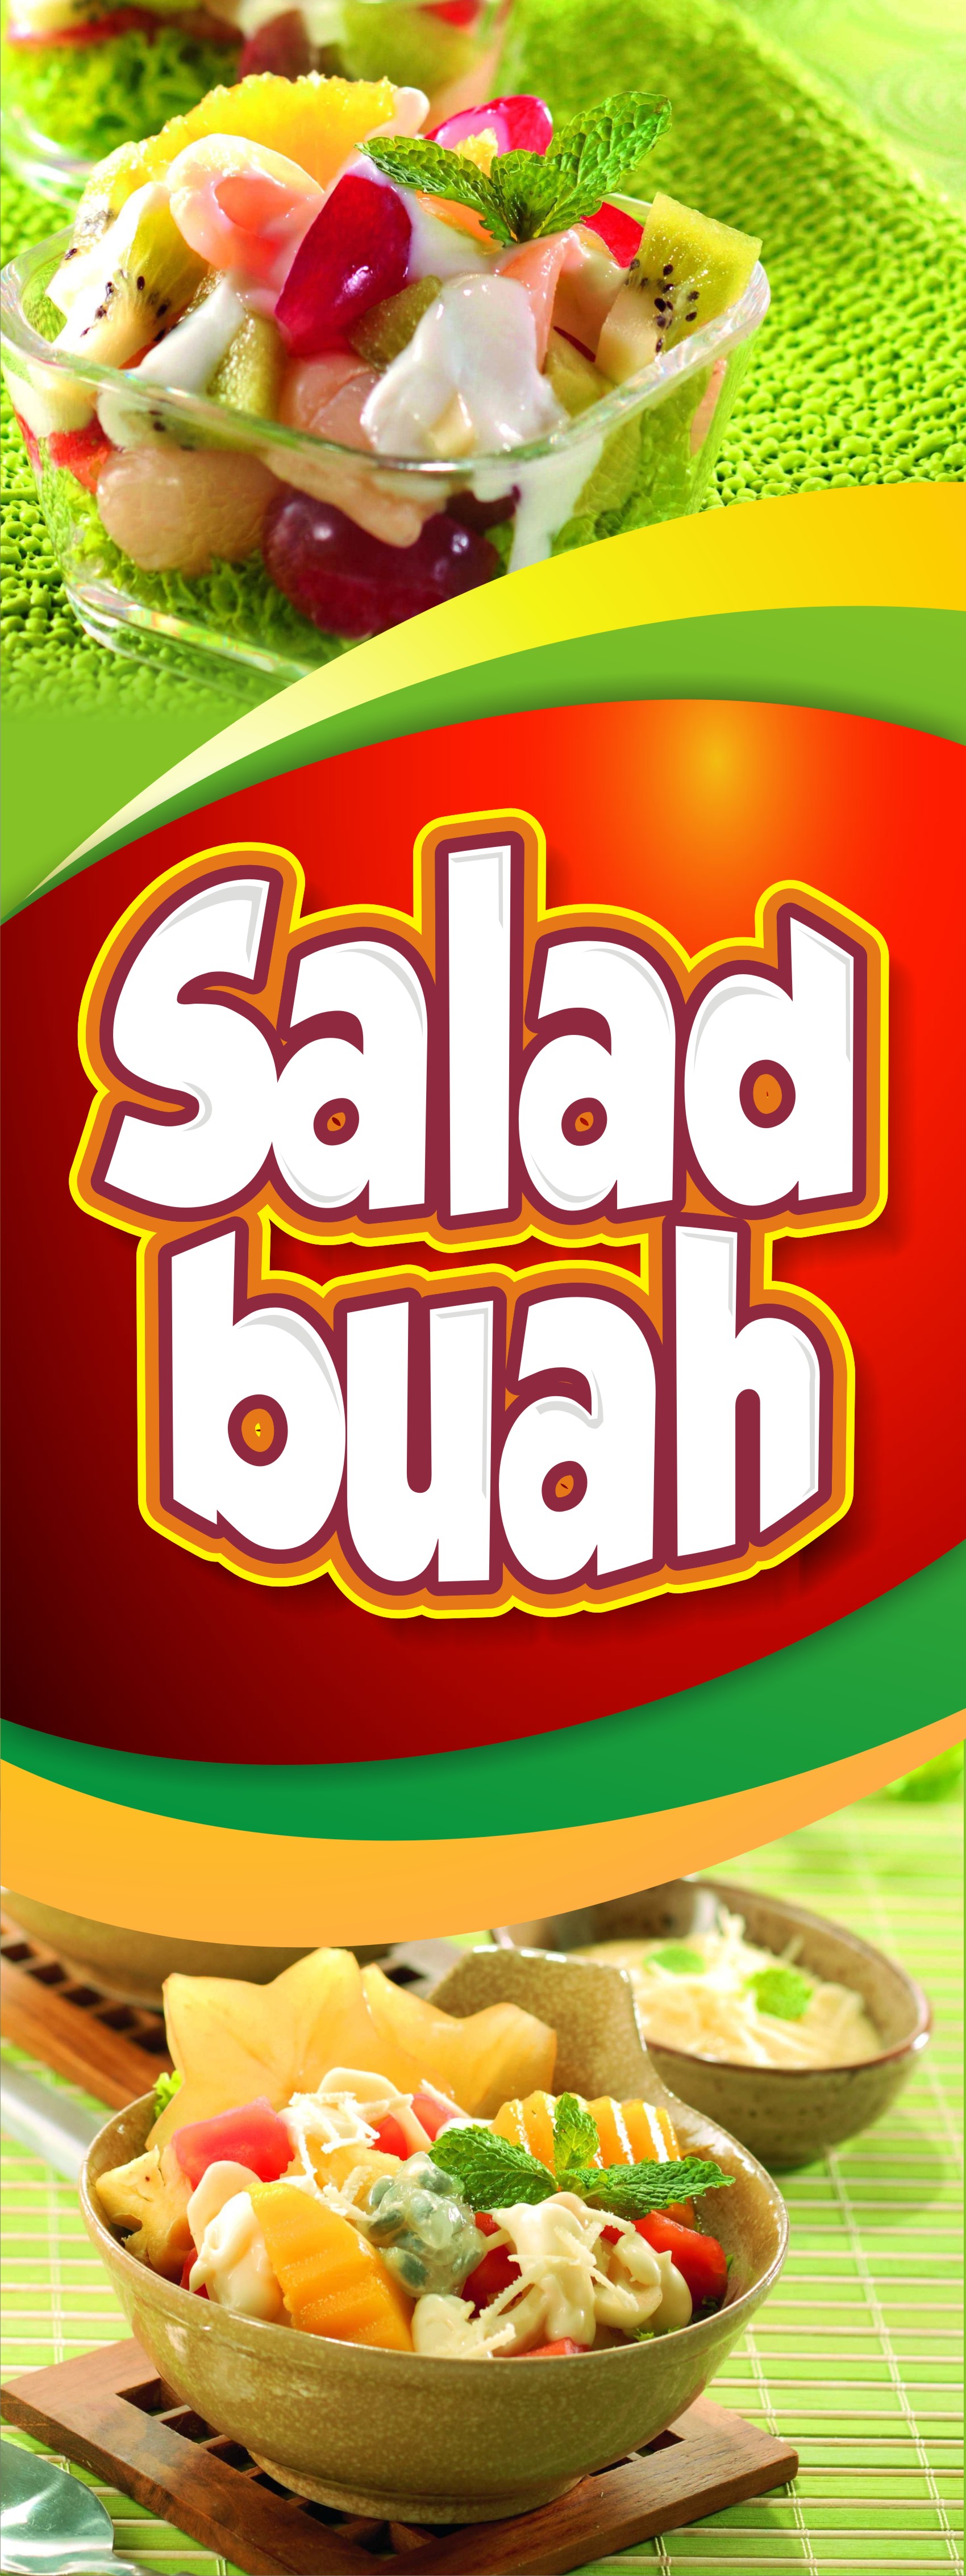  Contoh  Spanduk Salad  Buah  Brosur dan Spanduk